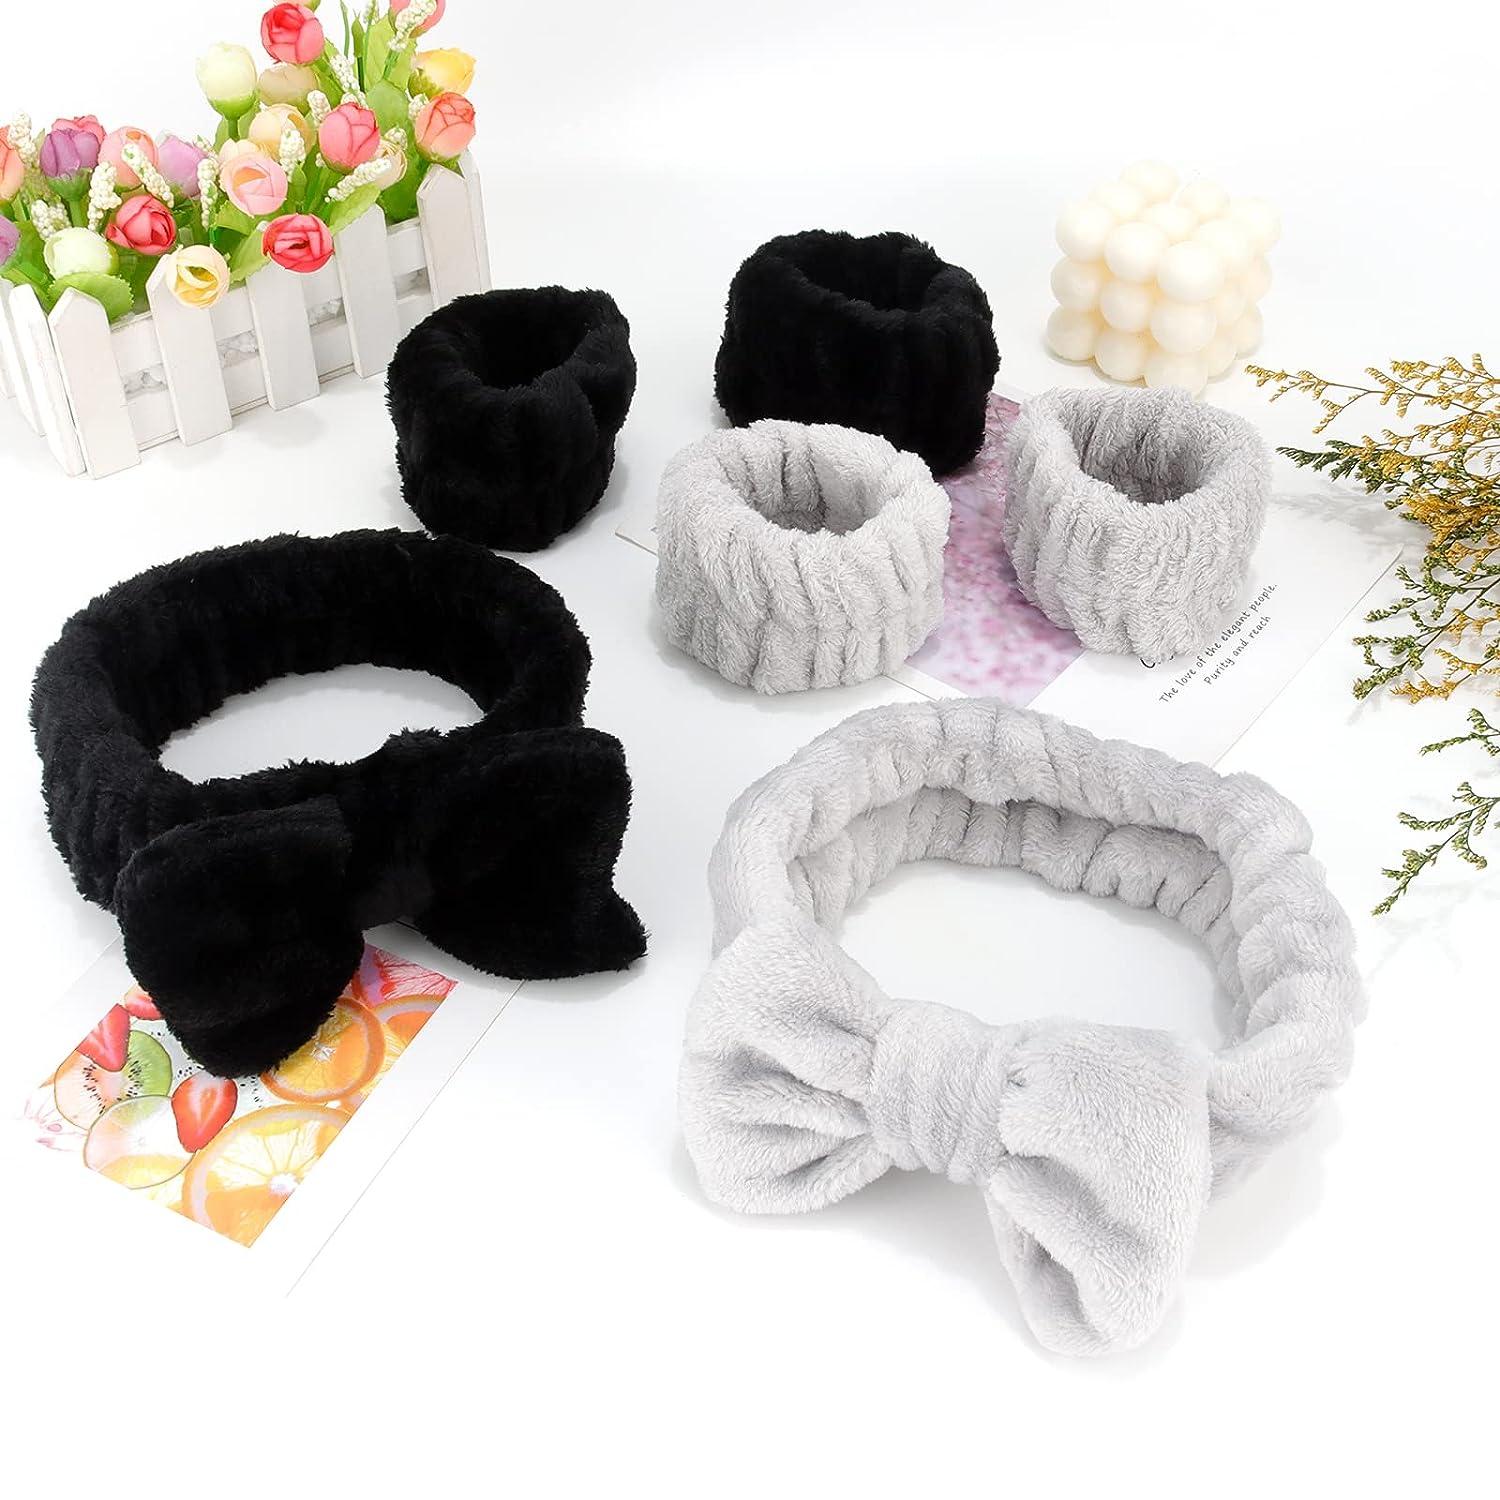 Araluky 6 Pcs Spa Headband Wrist Washband Scrunchies Cuffs for